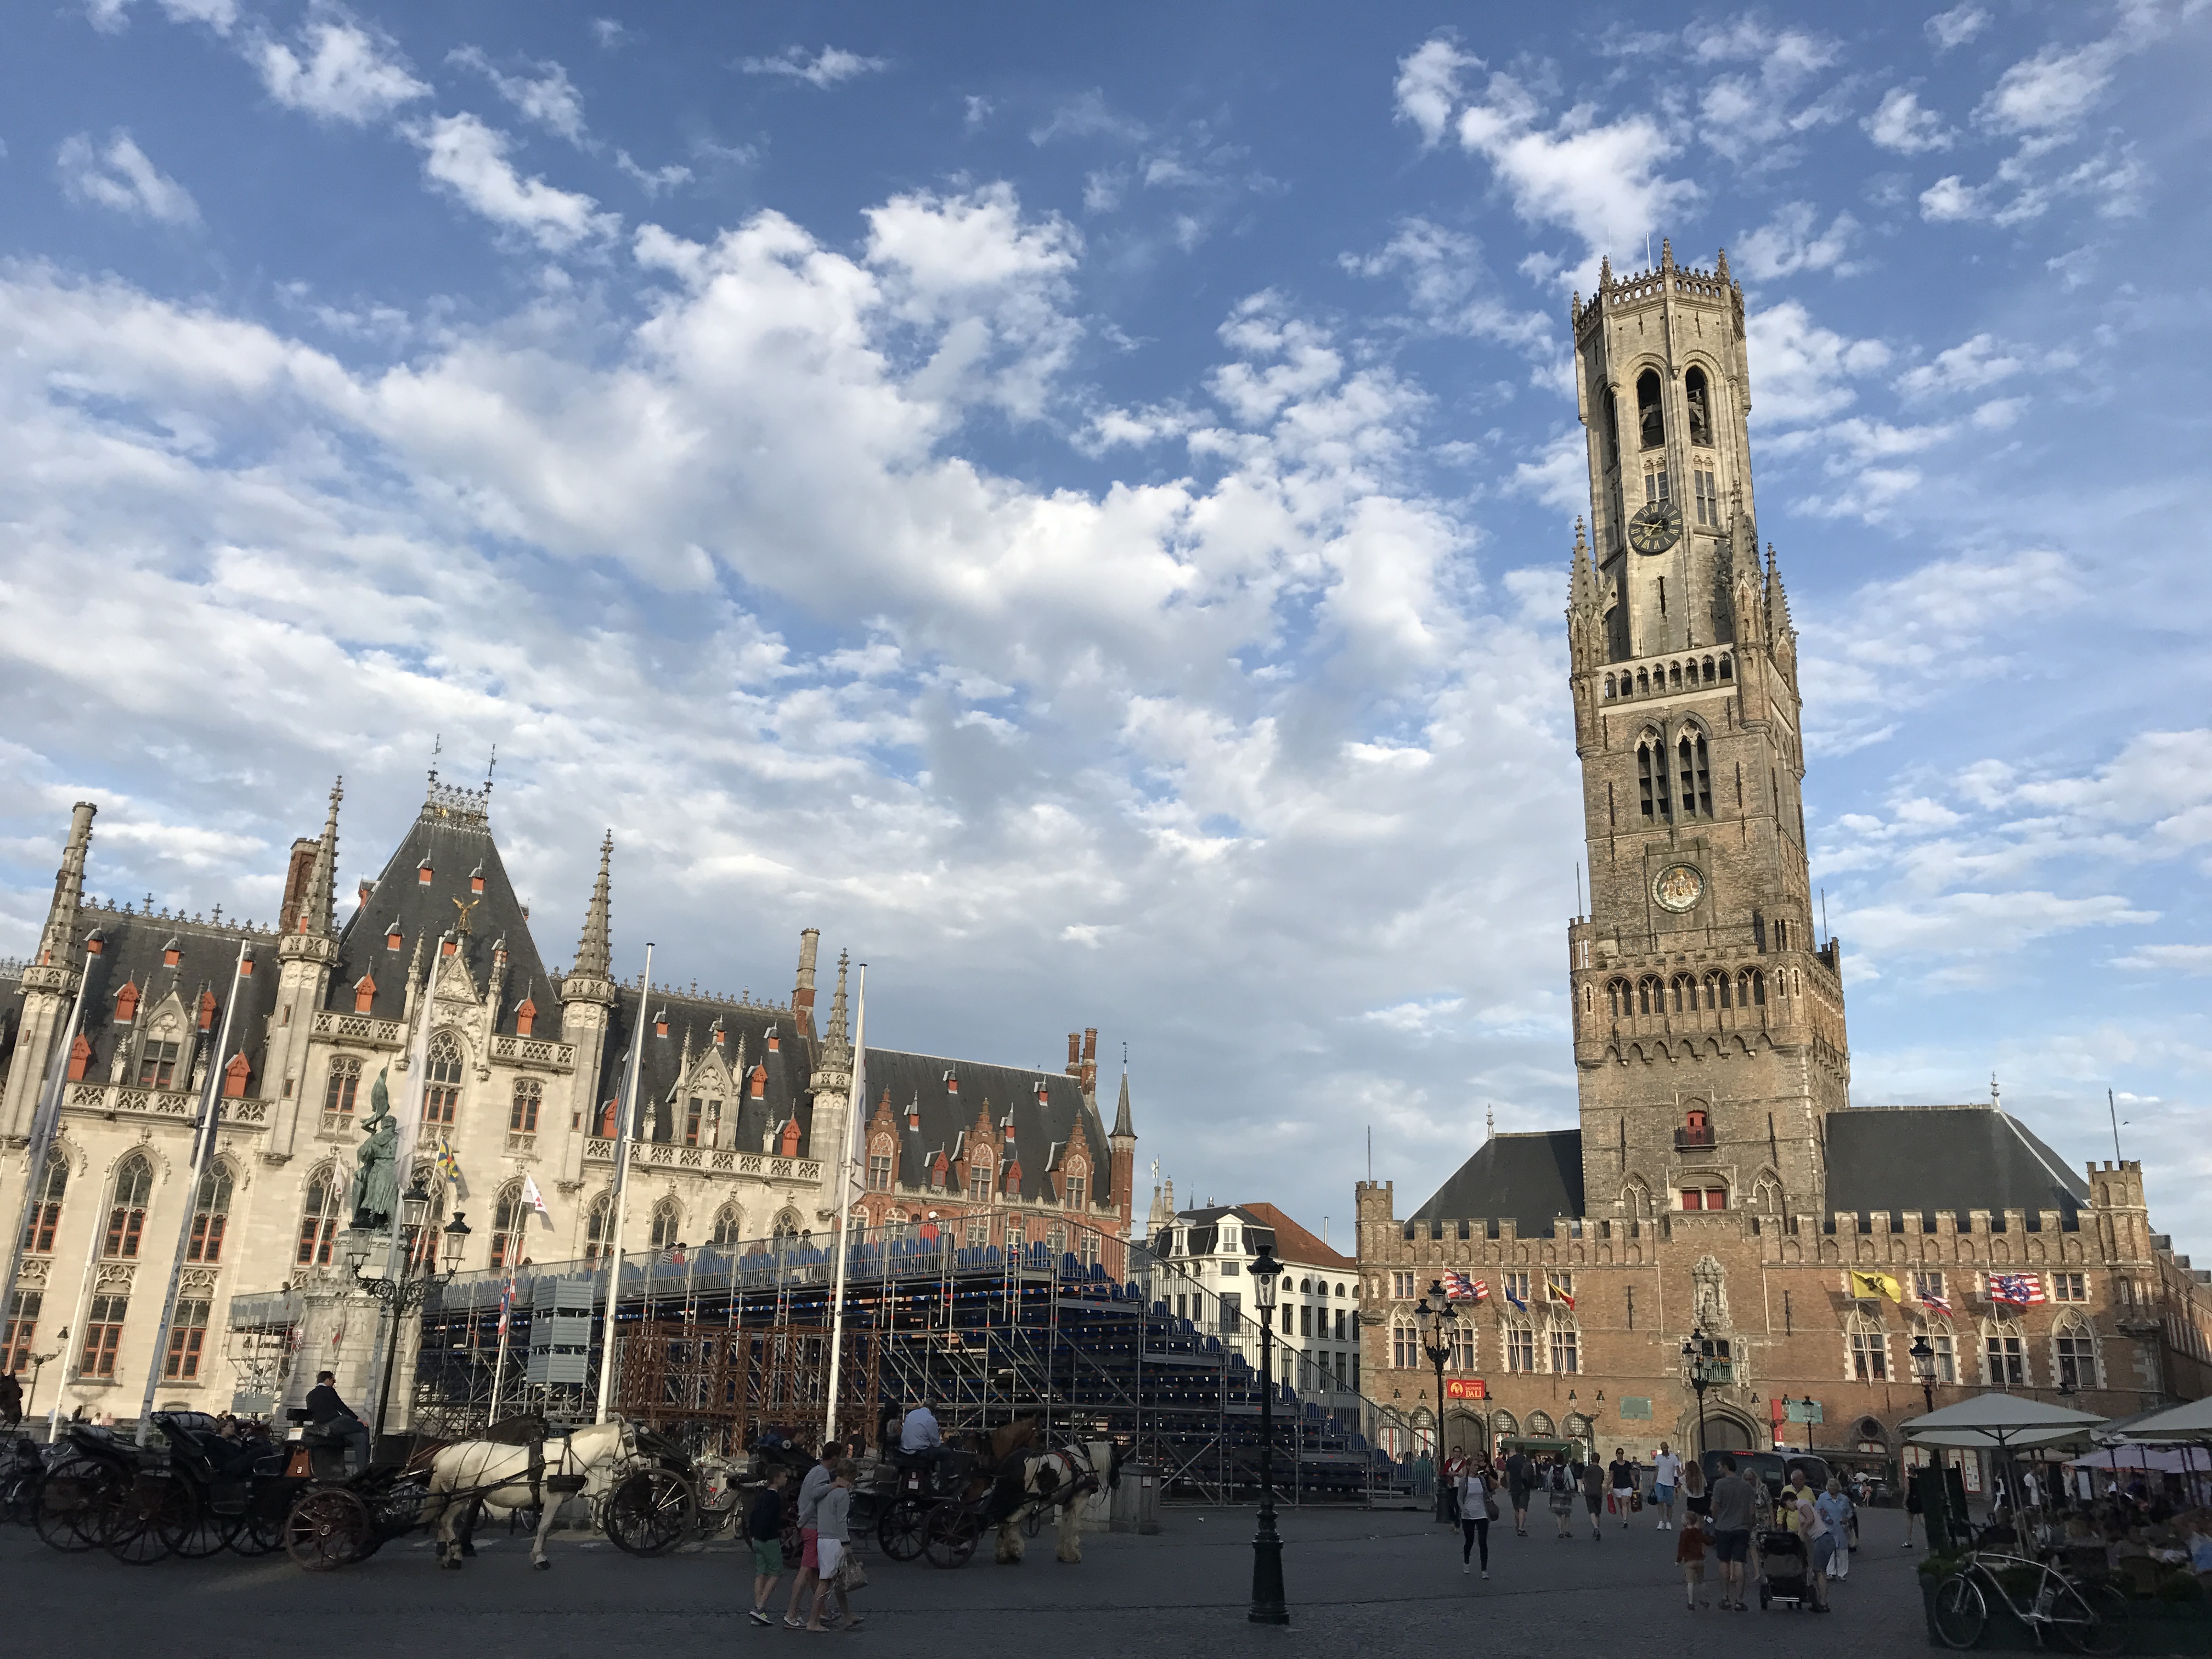 Belfry of Bruges, Belgium.